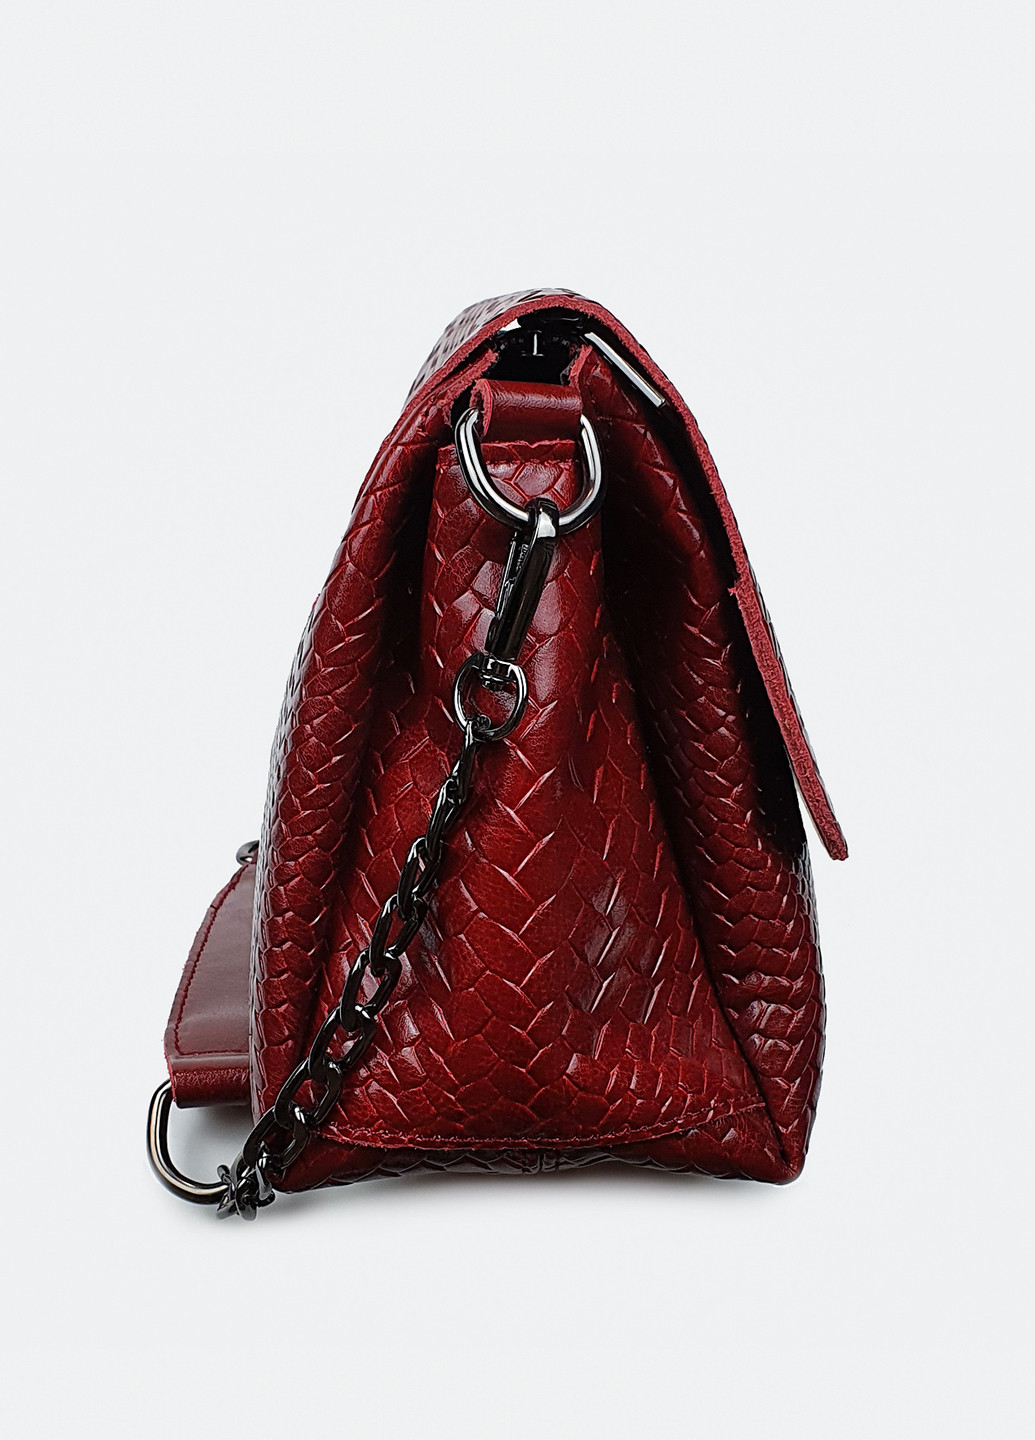 Стильная сумка кожаная кросс-боди средняя 009-1 Fashion сумка (226284952)